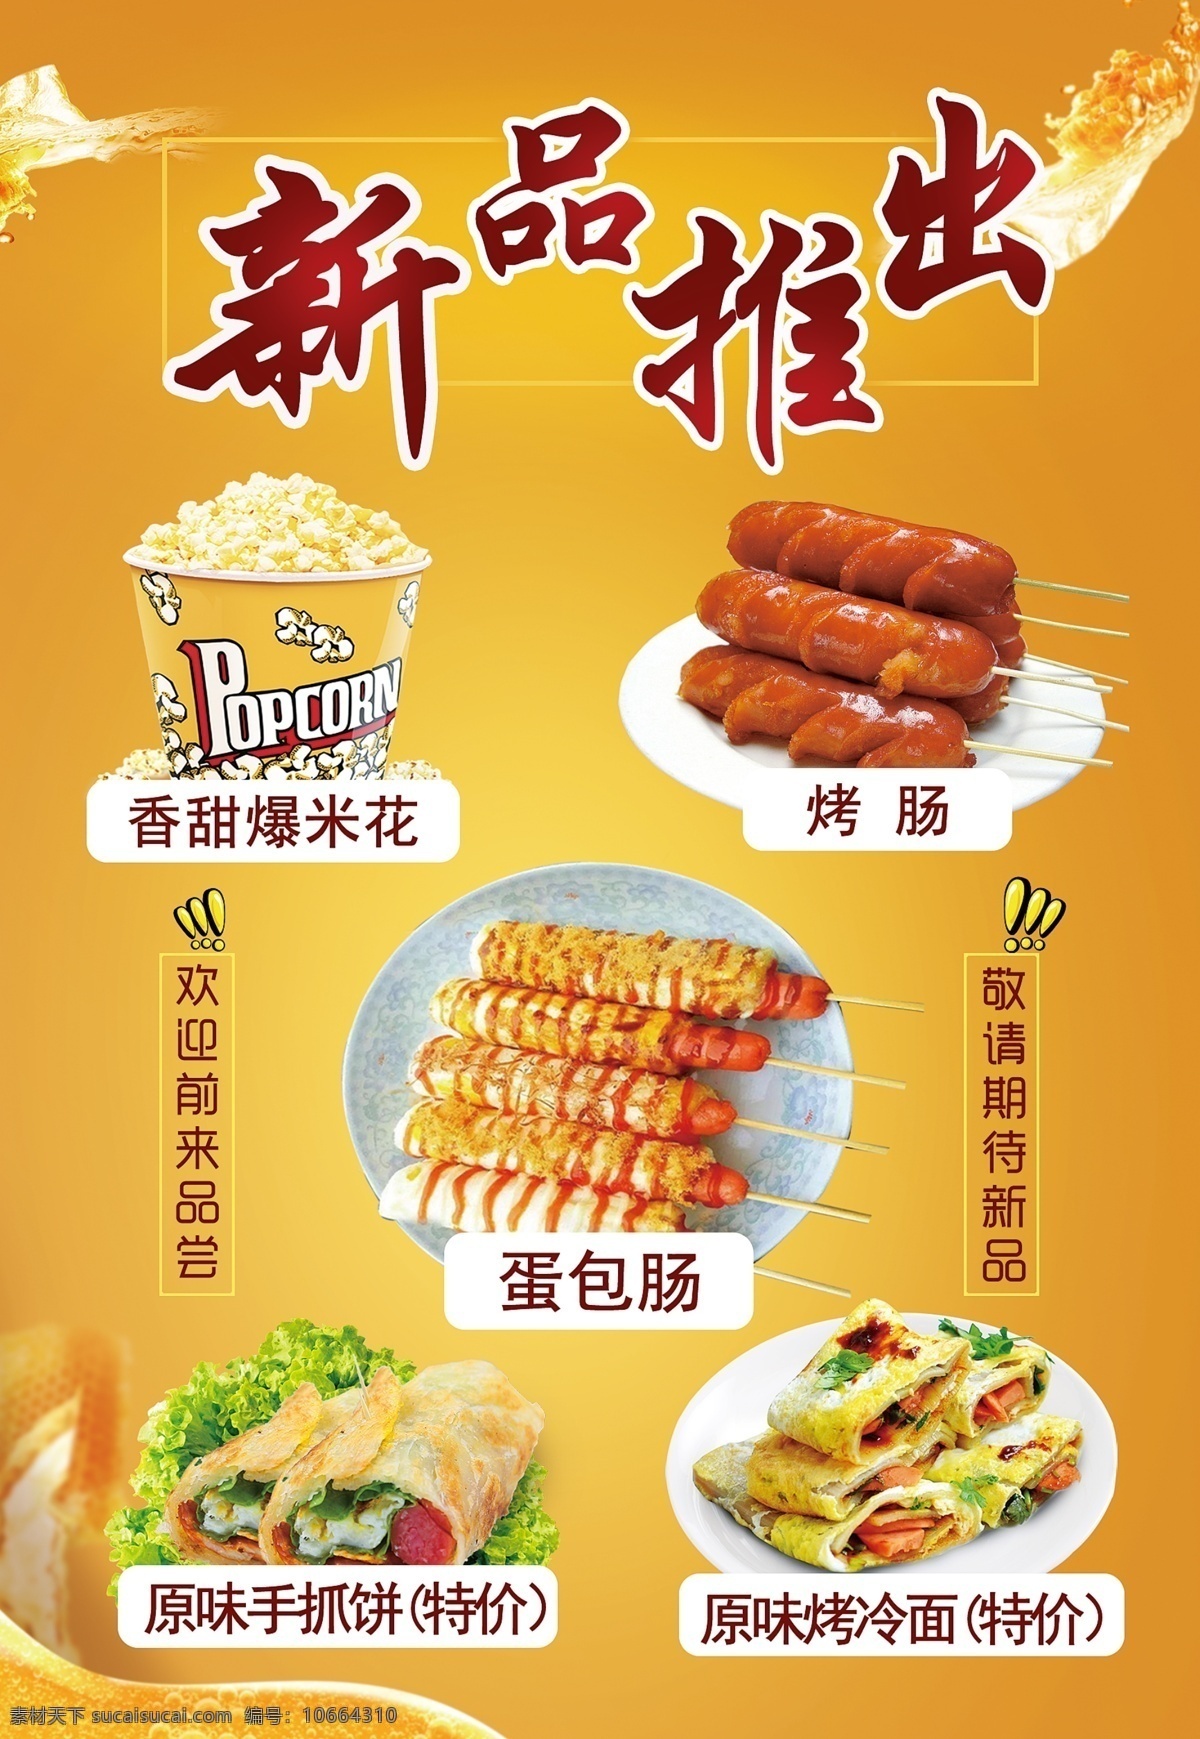 新品推出 海报 橘色 黄色 美食 餐饮 小吃 展板 广告